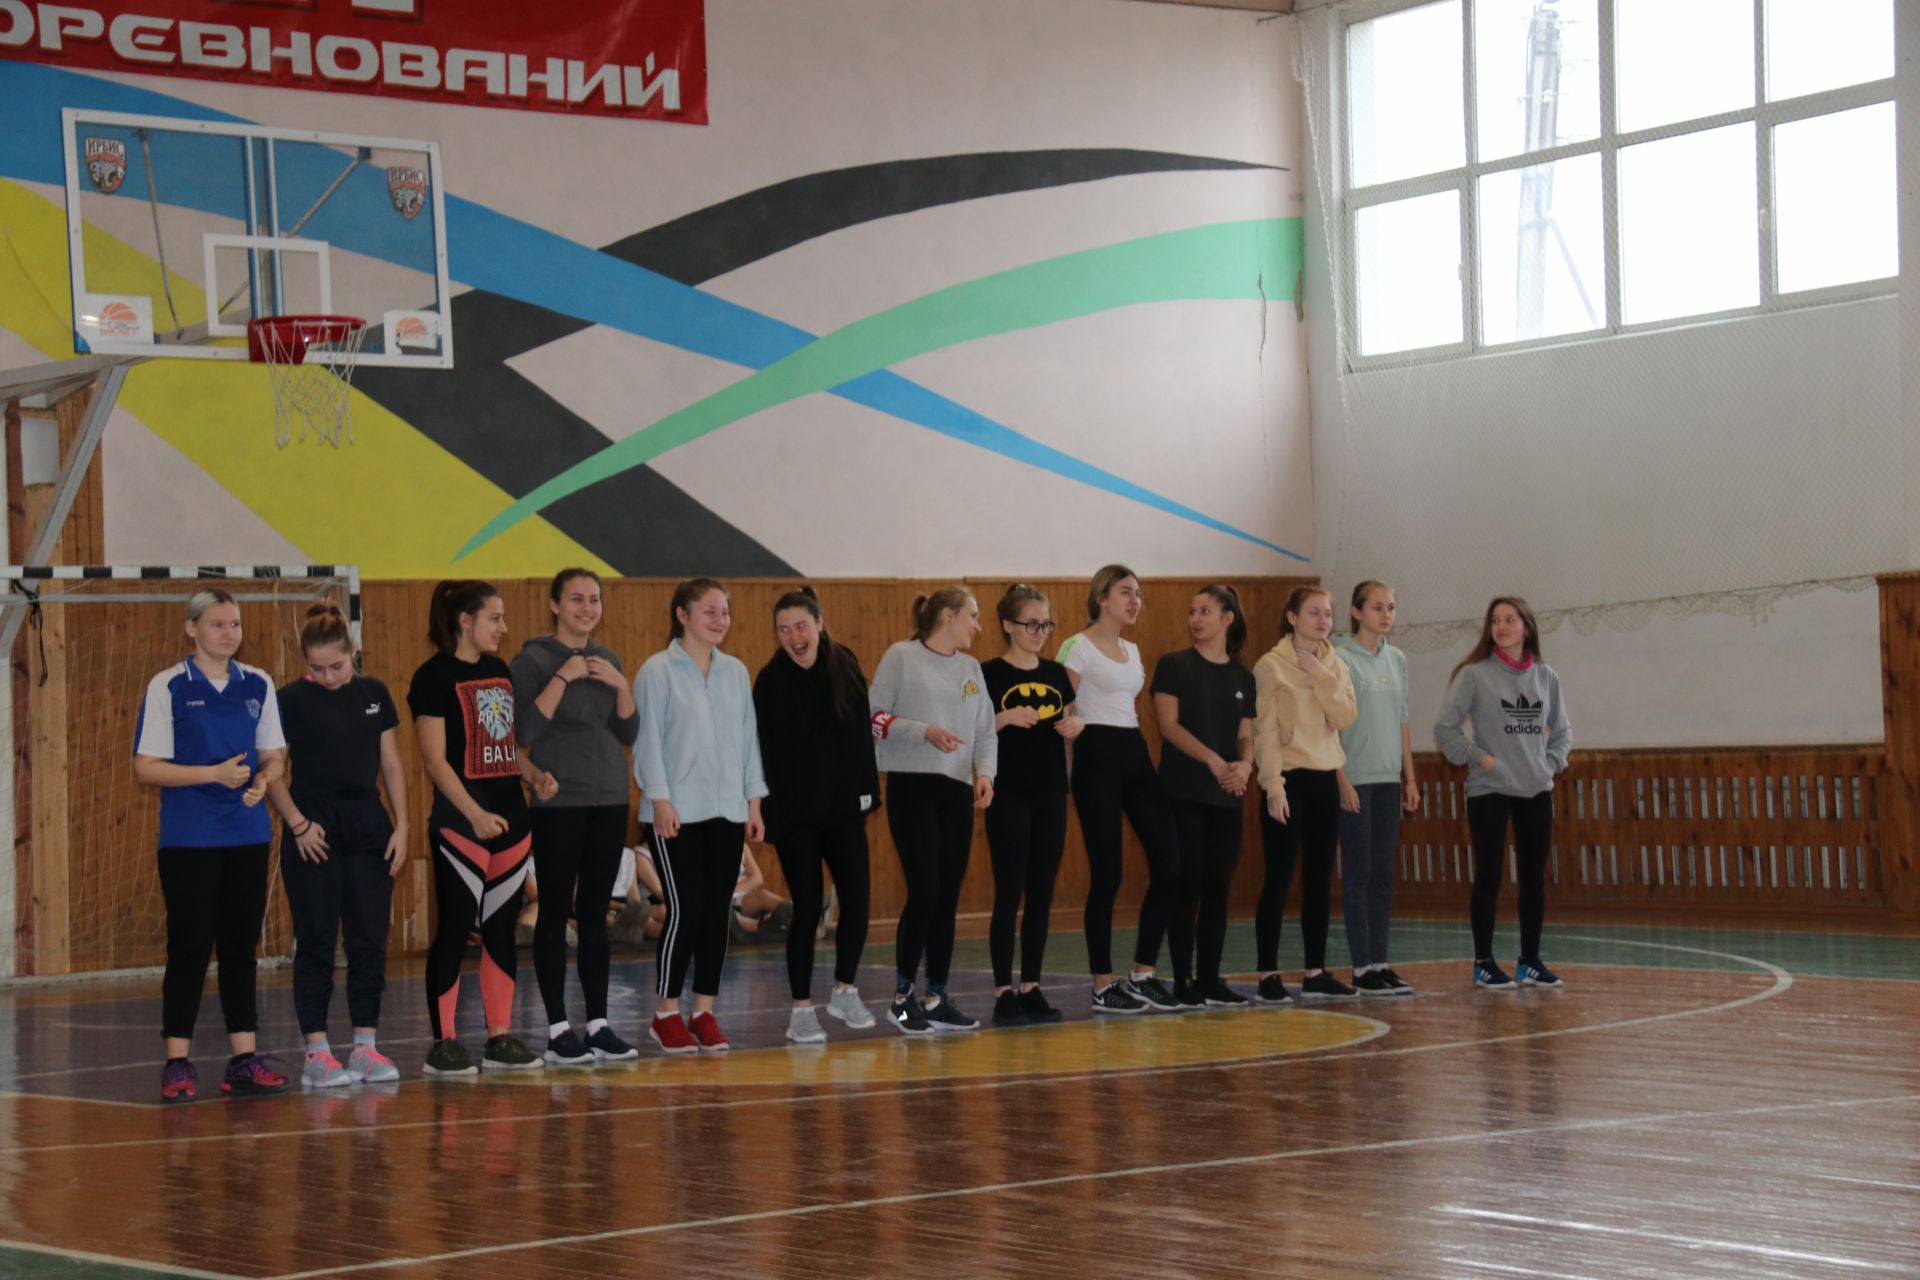 Сегодня на базе СШ Олимп состоялся муниципальный этап чемпионата ШБЛ КЭС-БАСКЕТ среди команд девушек.